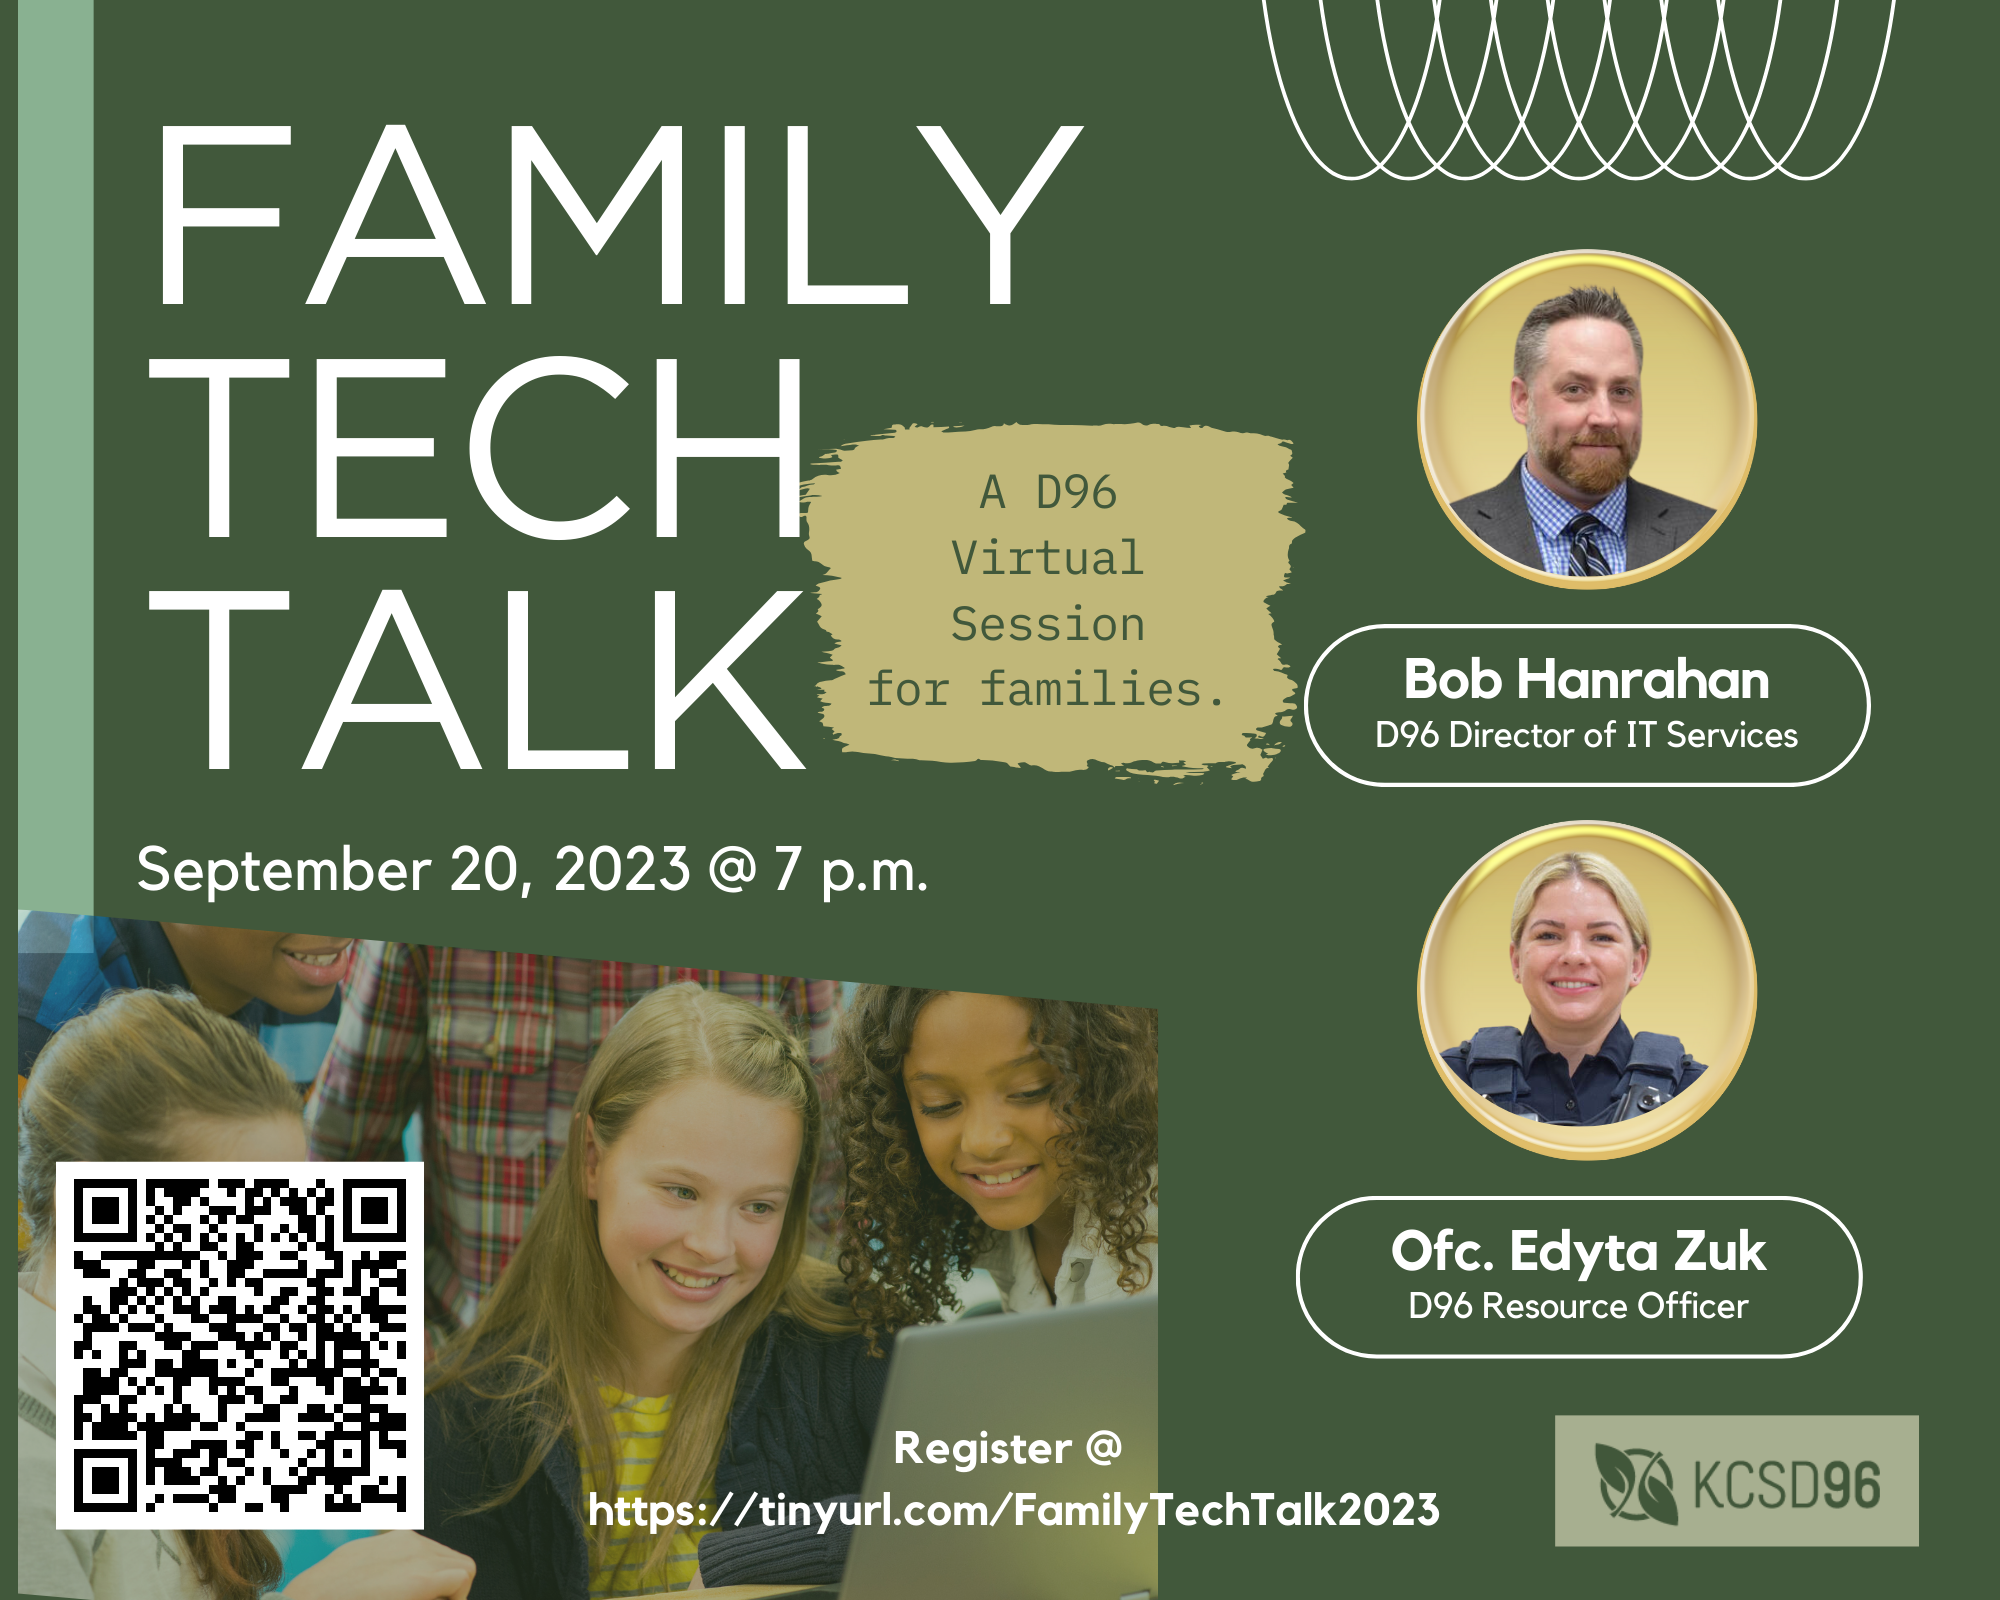 Family Tech Talk on September 20 2023